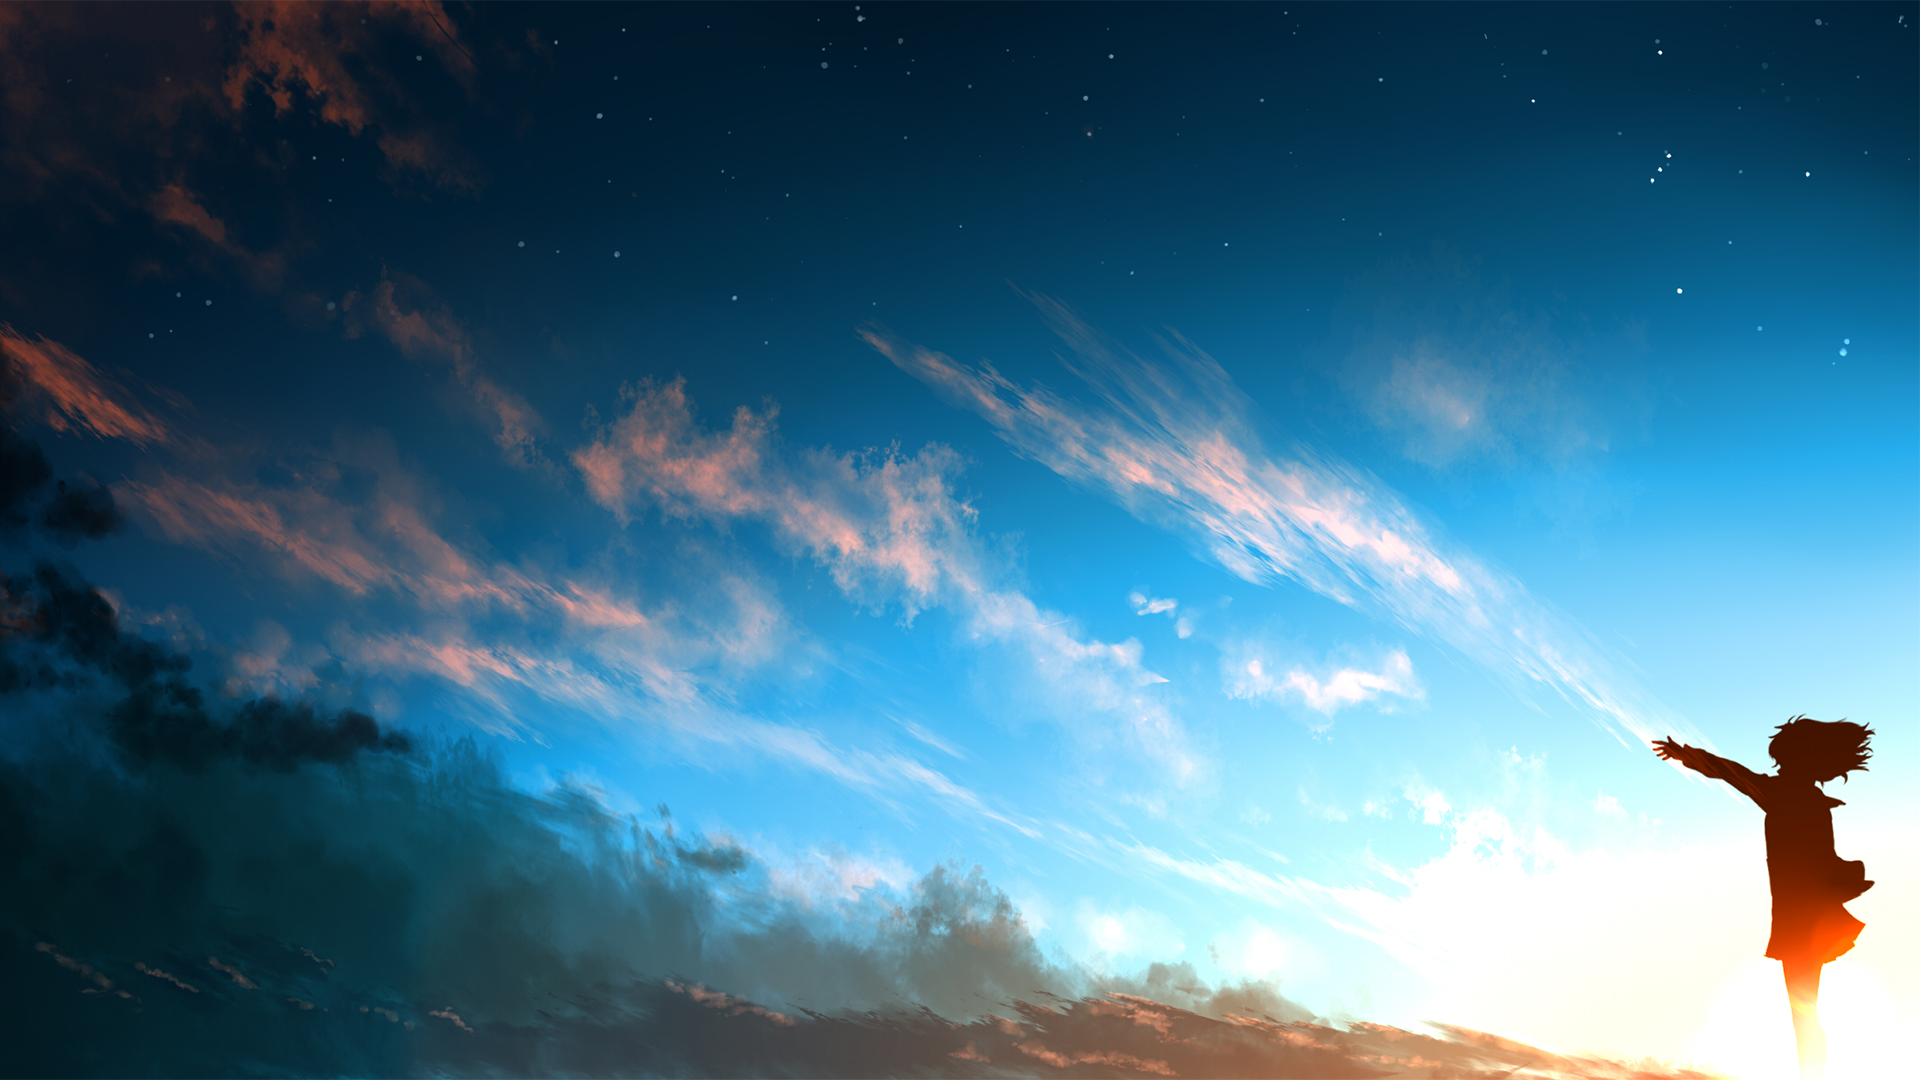 kyoukai keine kanata wallpaper,himmel,wolke,blau,atmosphäre,licht